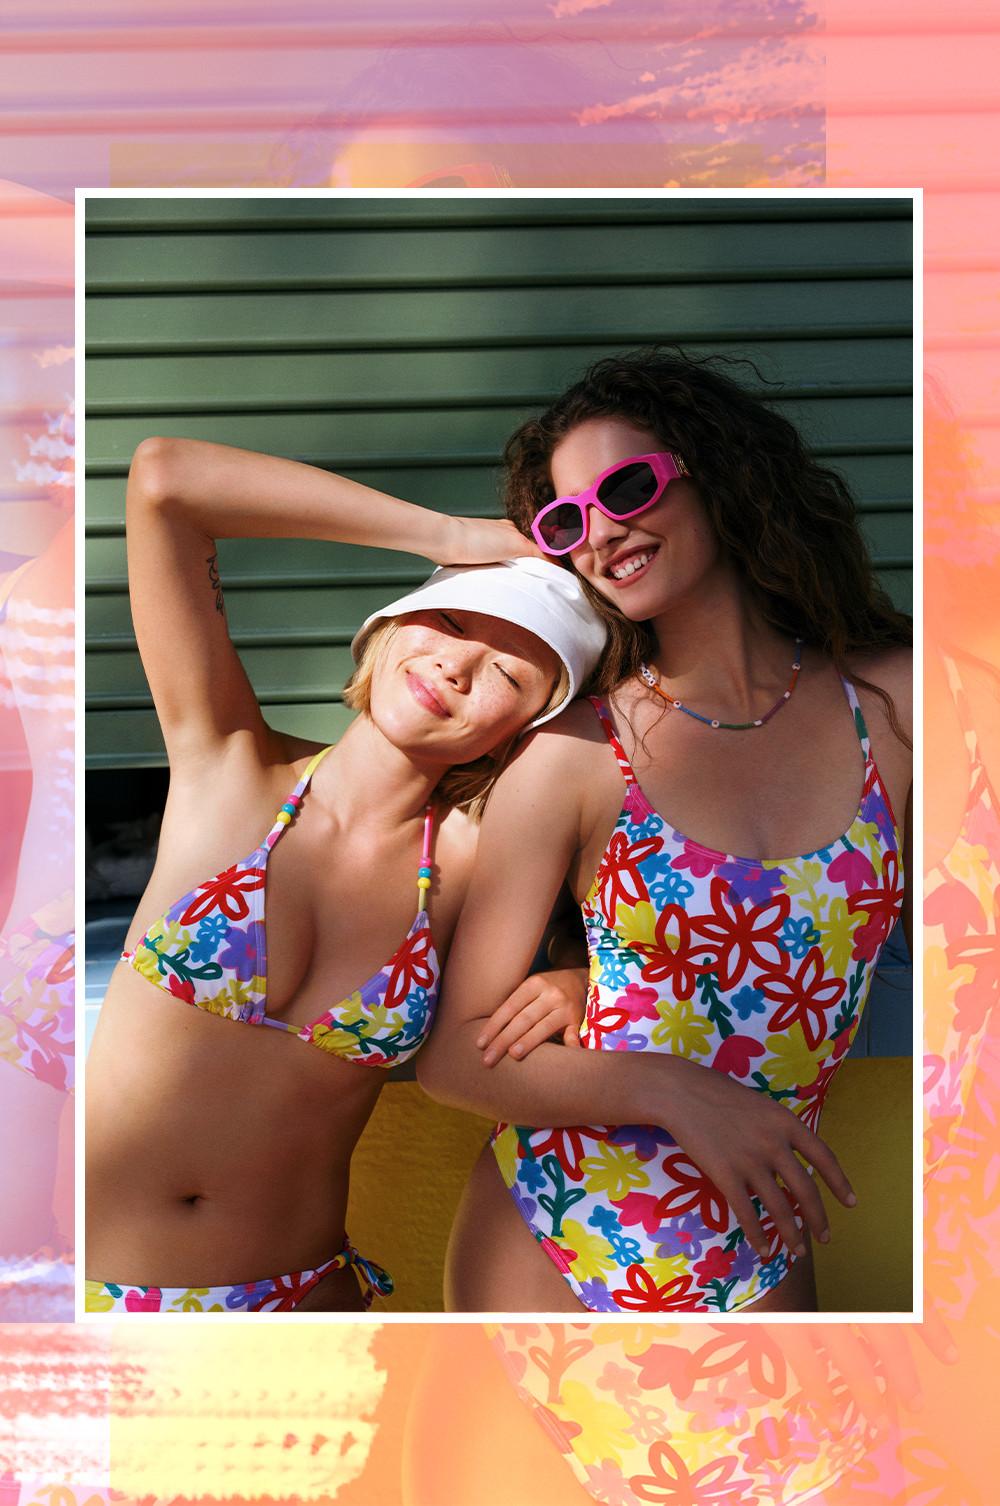 Women wearing floral bikini and swimsuit